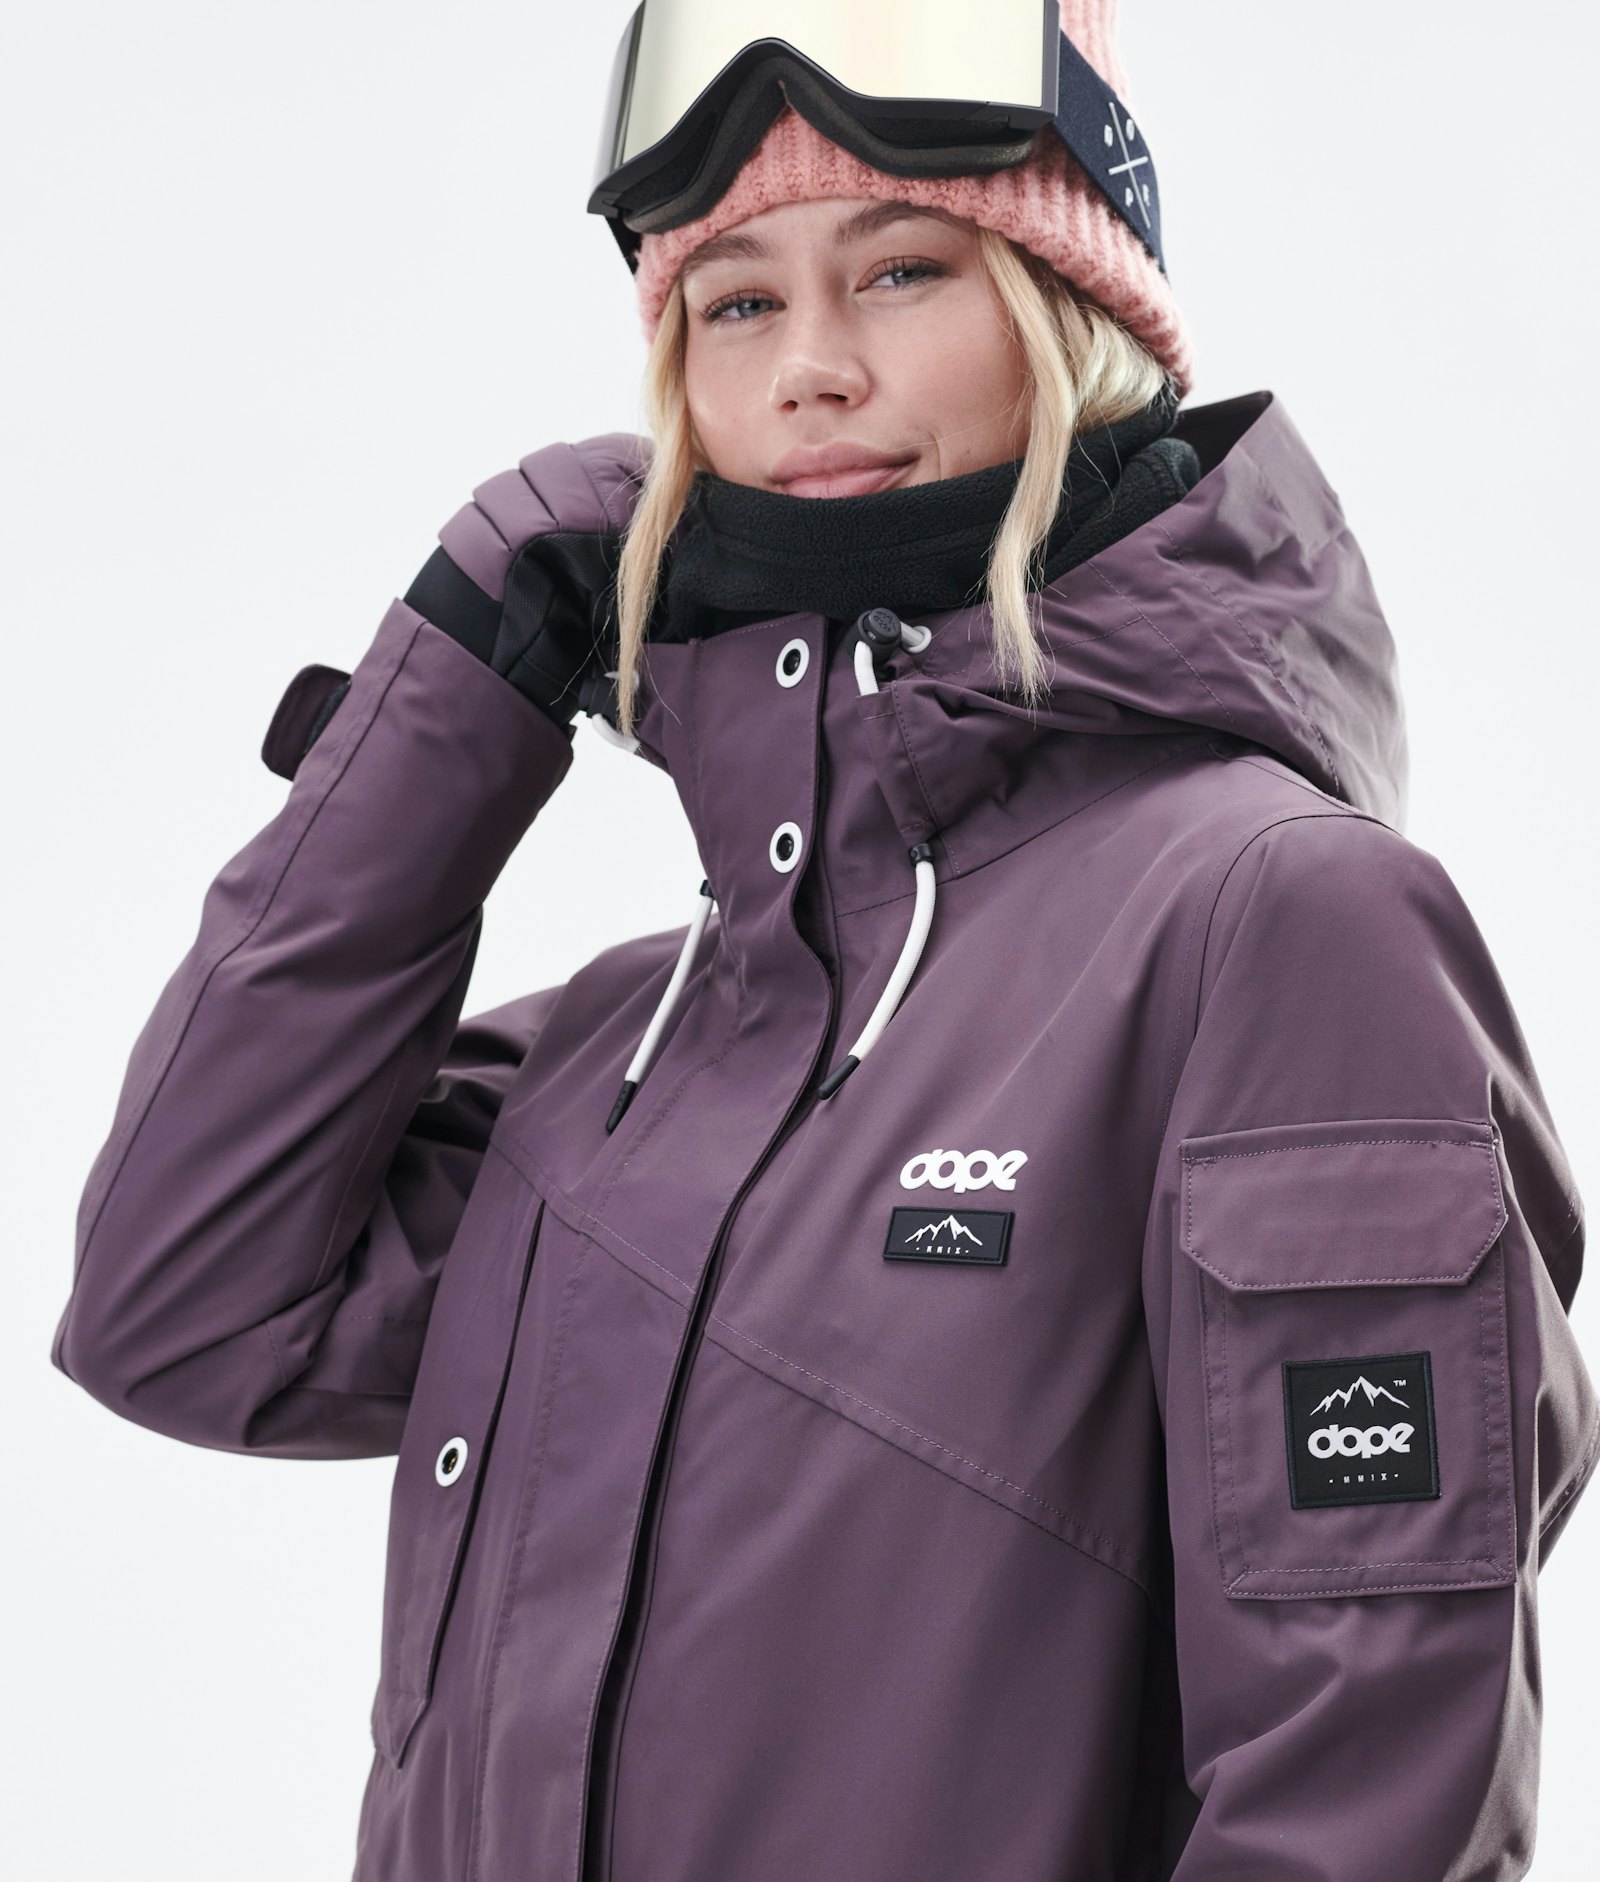 Adept W 2020 Veste Snowboard Femme Faded Grape